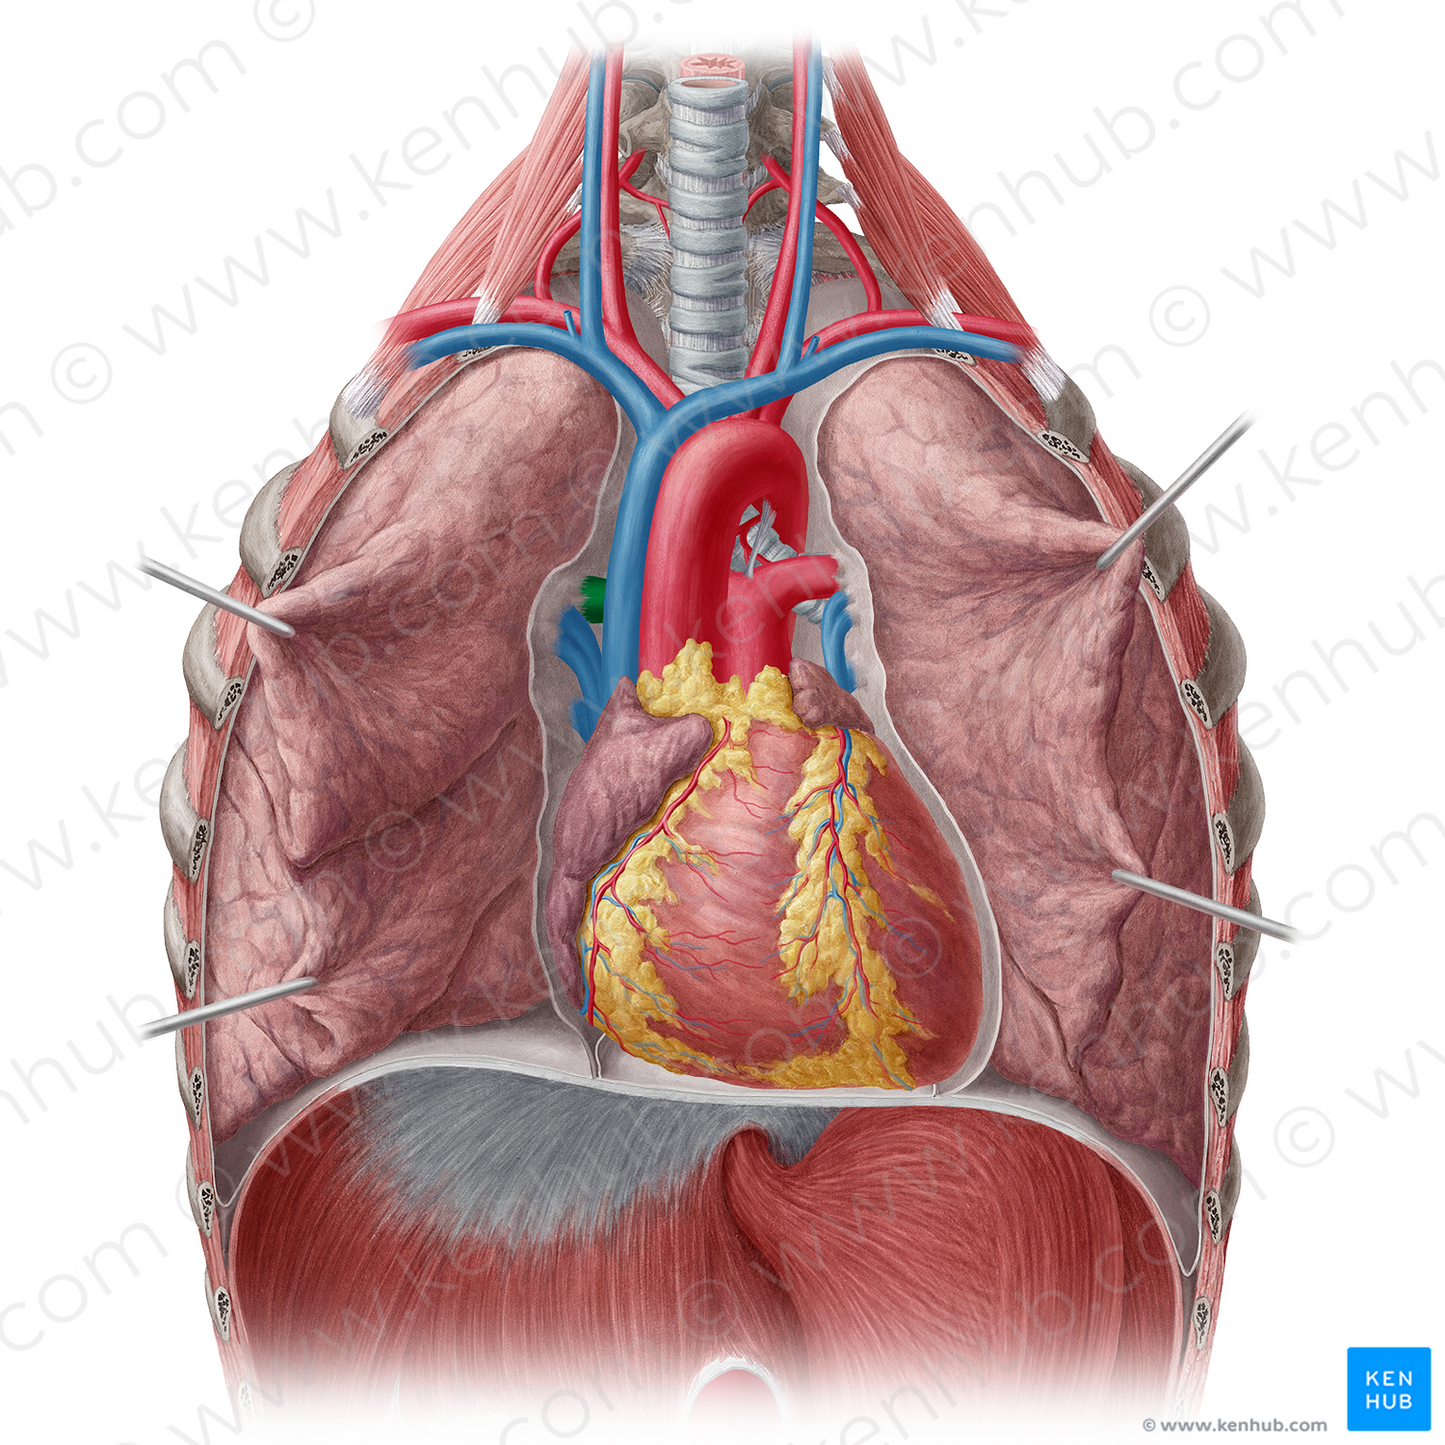 Right pulmonary artery (#1682)